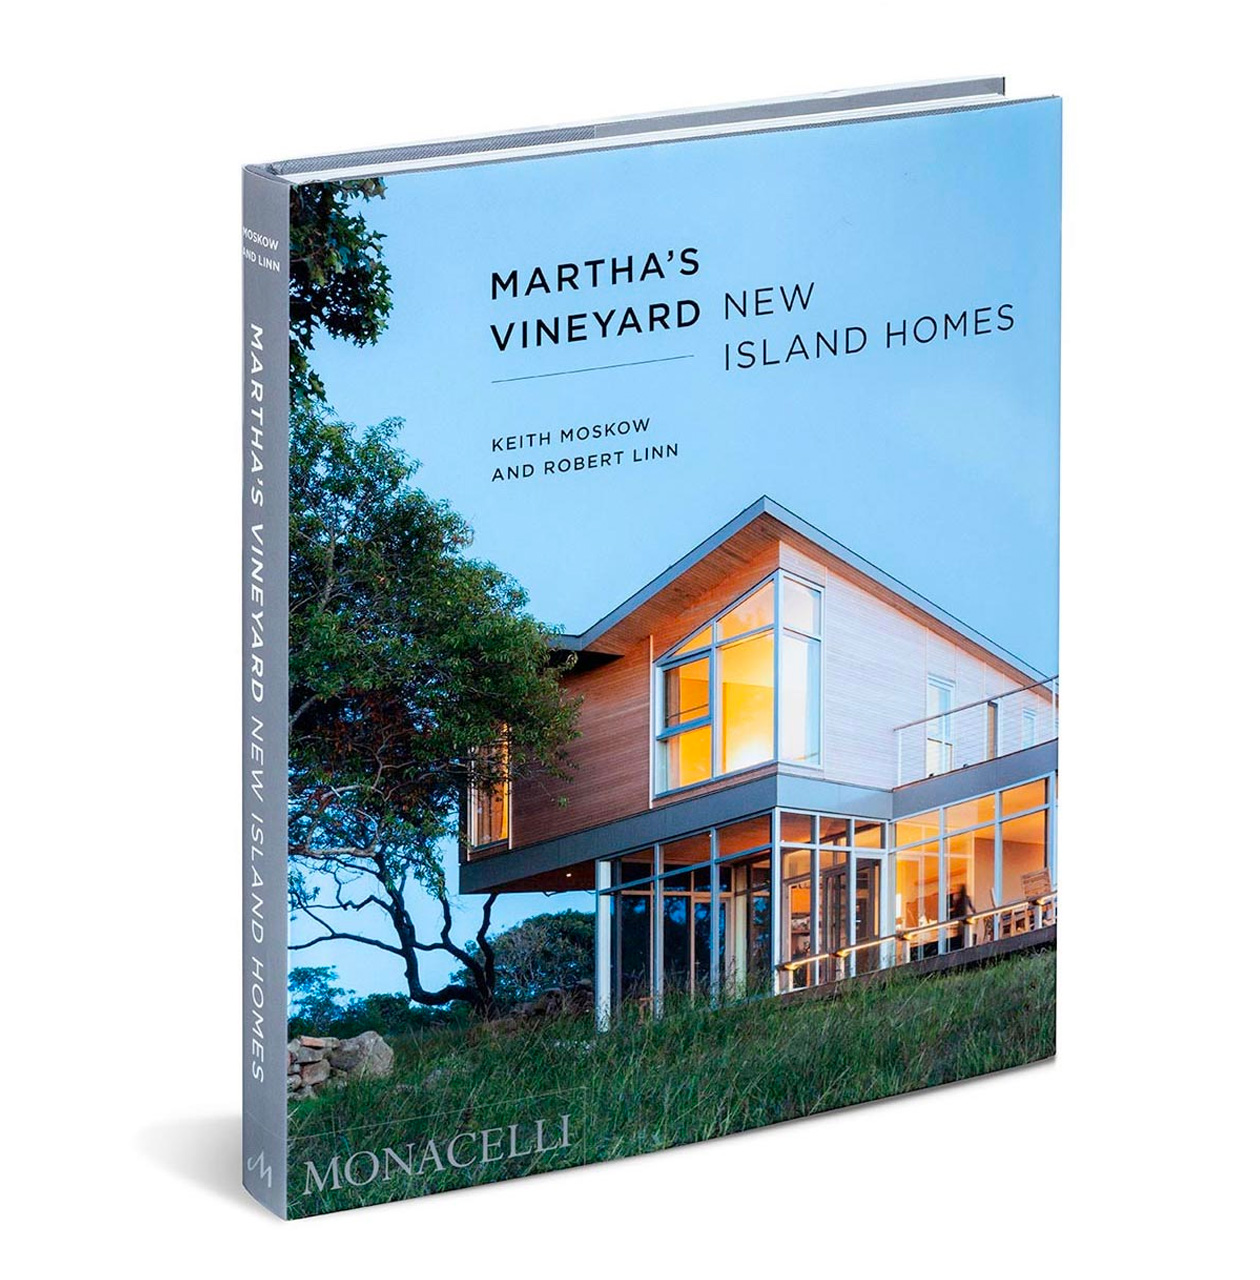 Martha's Vineyard New Island Homes